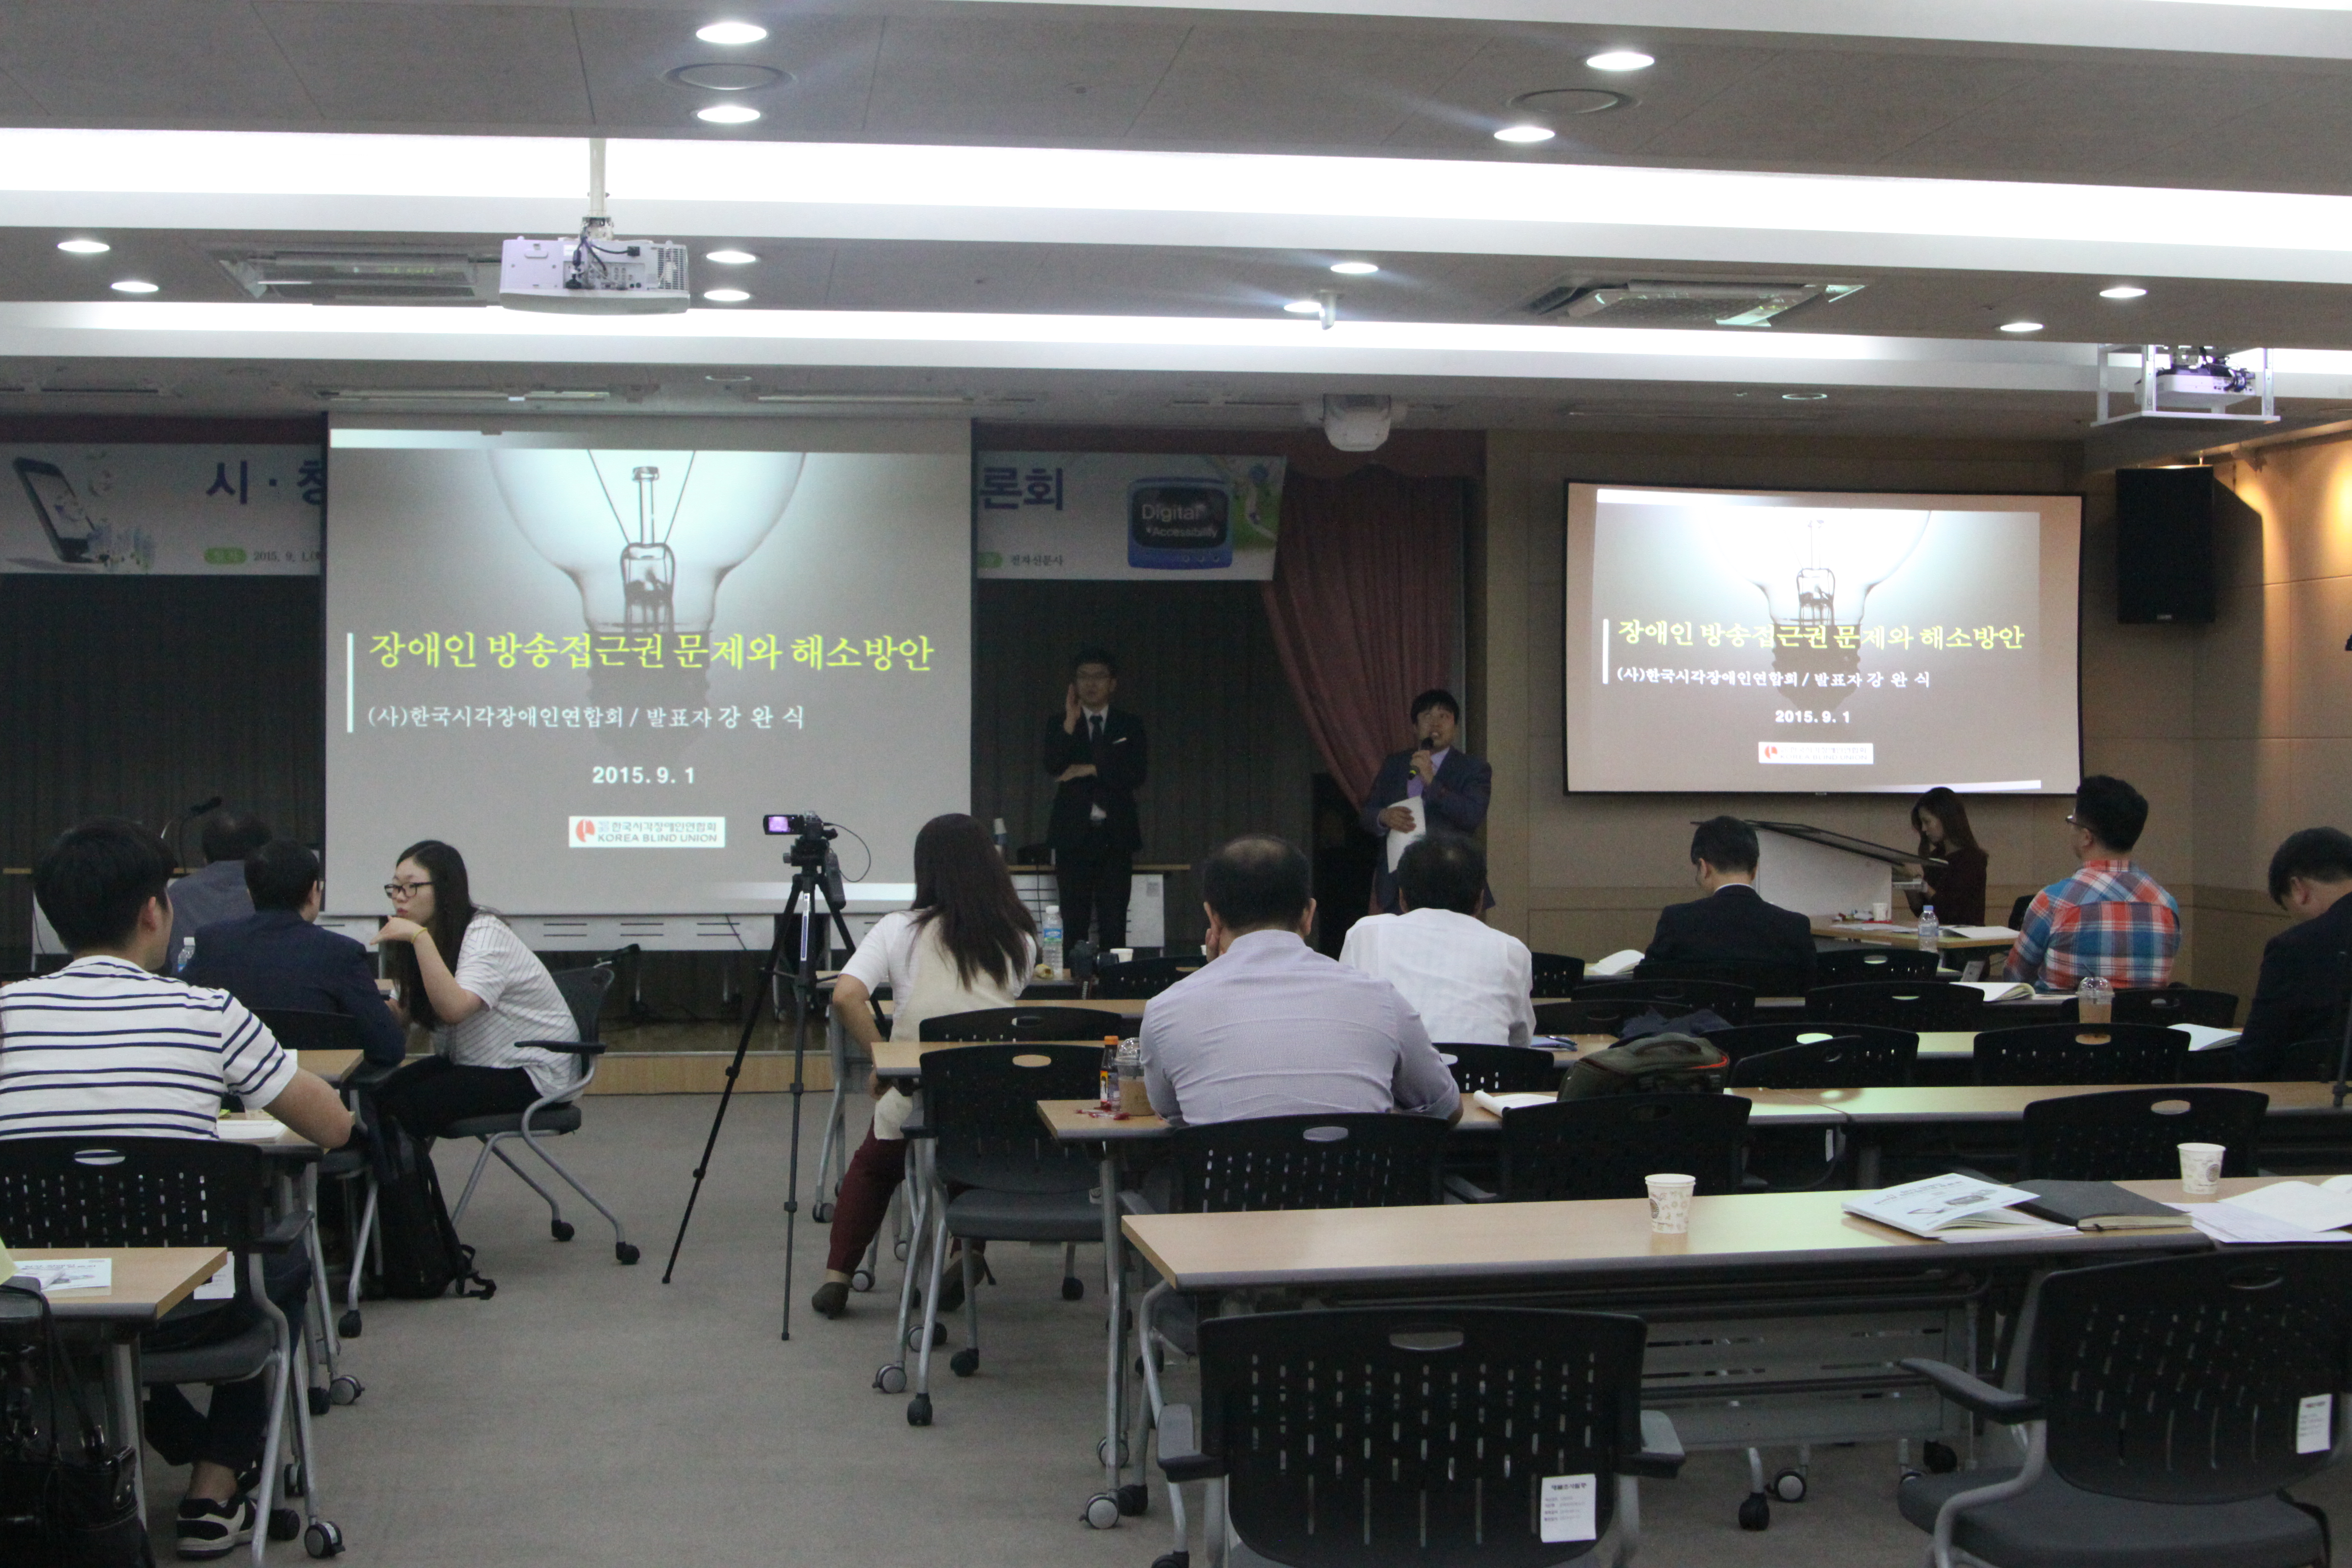 시·청각 장애인의 모바일 정보접근권 토론회